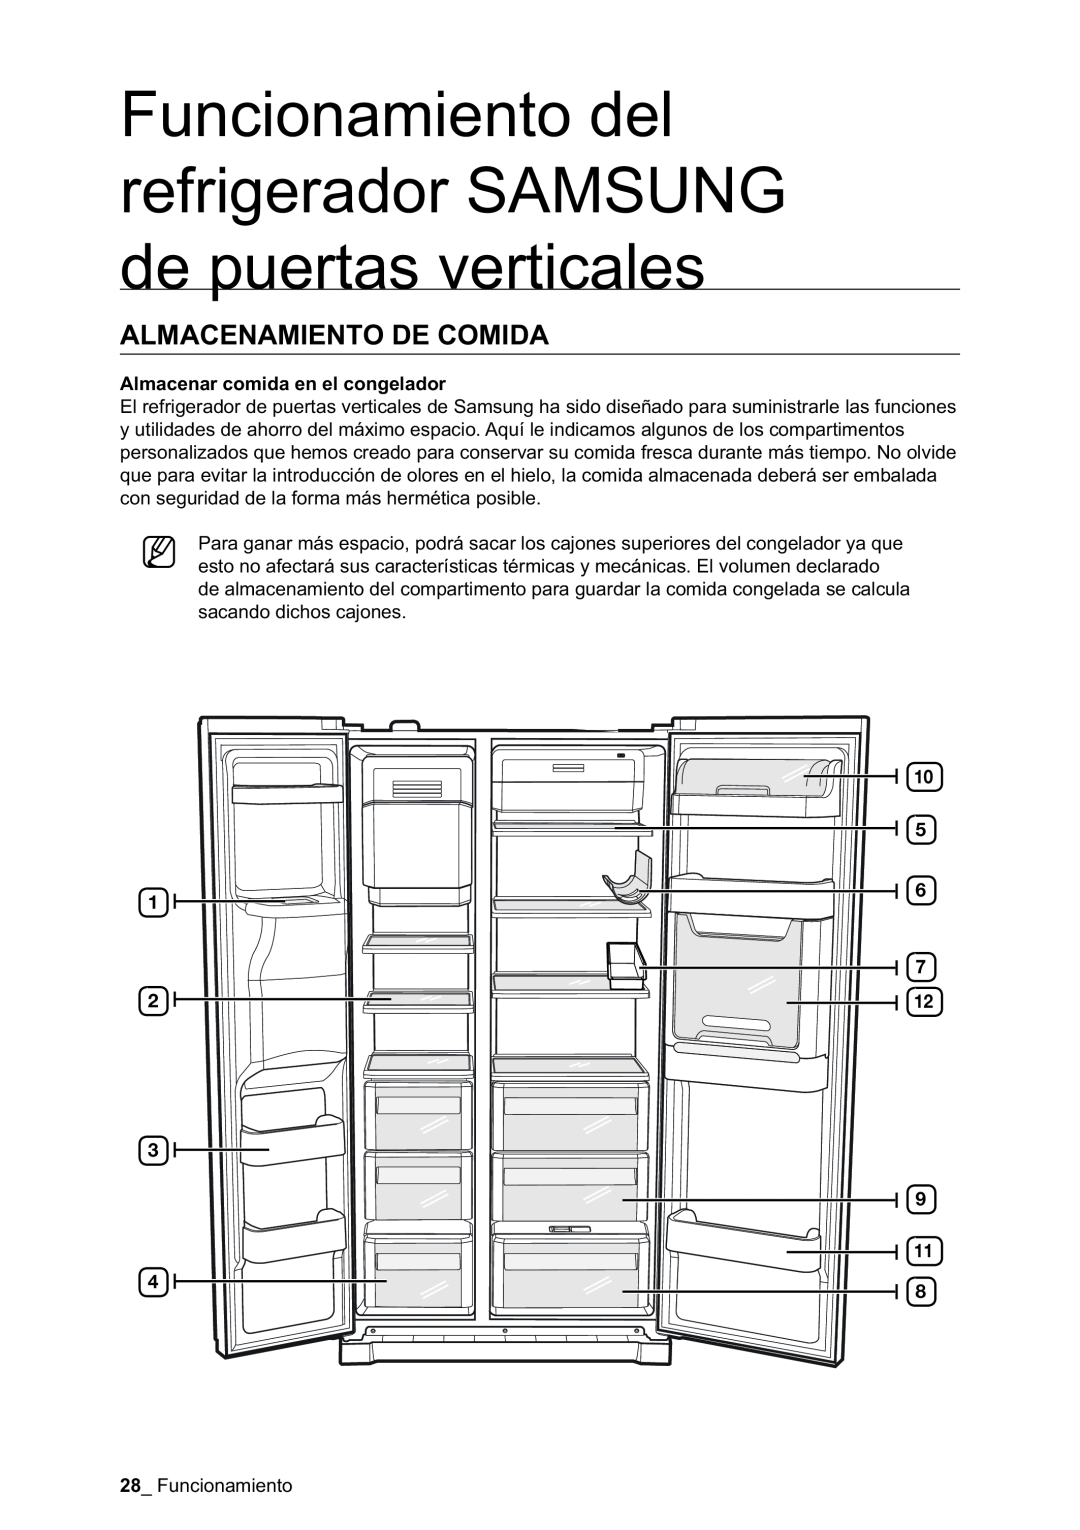 Samsung RSA1NTPE1/XES manual Almacenamiento De Comida, Funcionamiento del refrigerador SAMSUNG de puertas verticales 